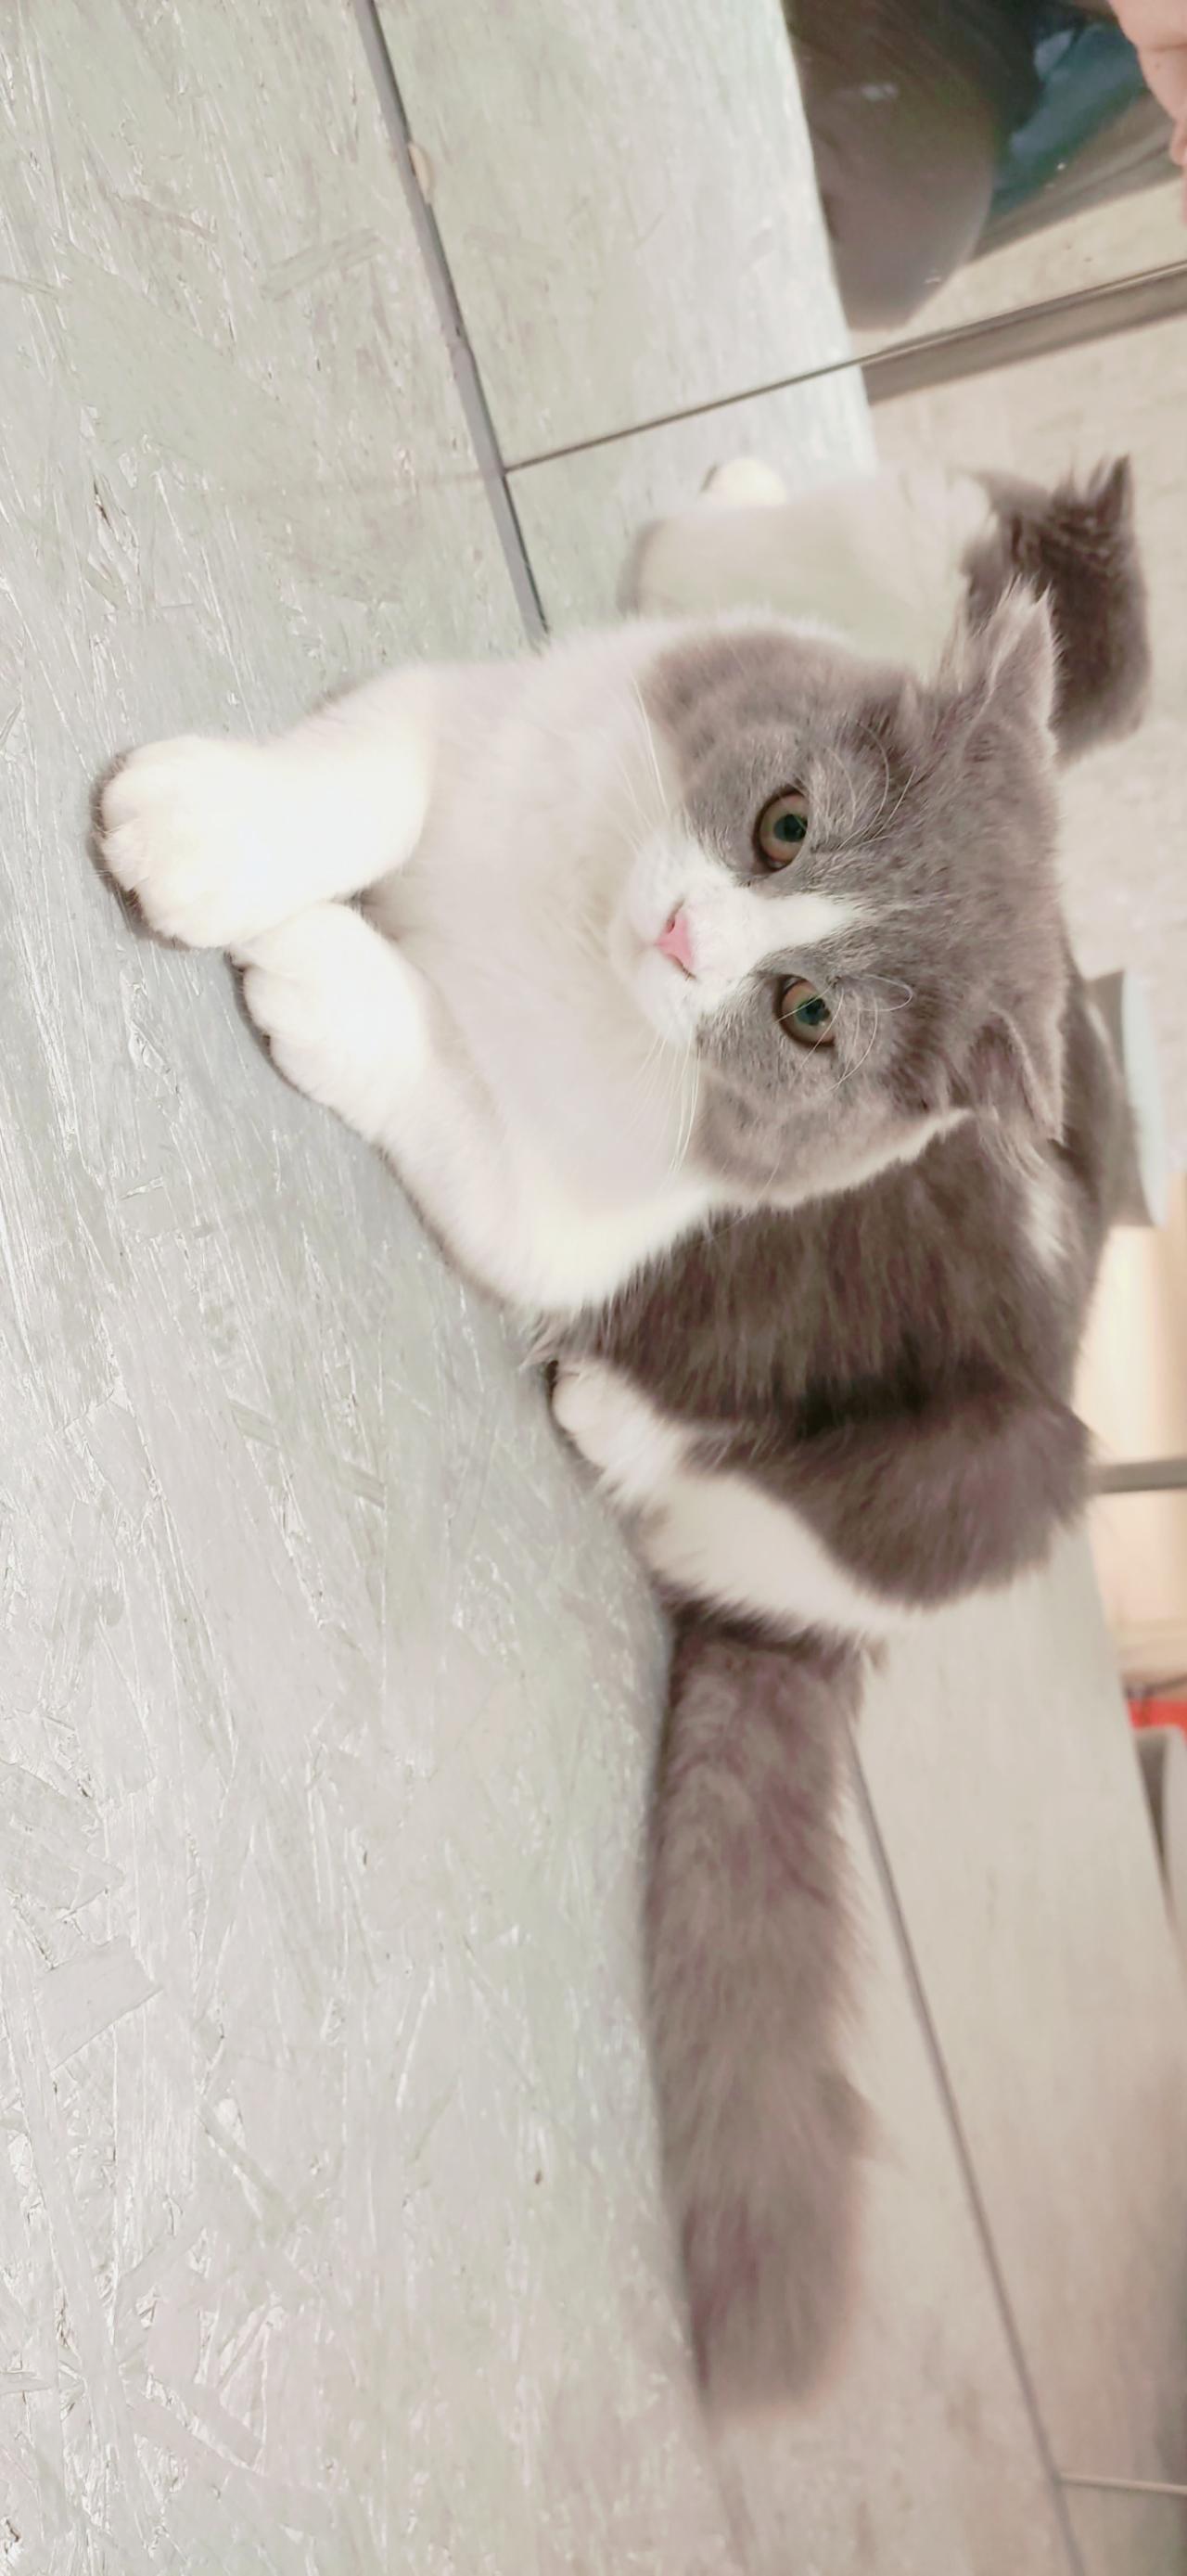 趴在镜子前大理石桌面的灰色和白色相间毛色的猫咪 横屏电脑壁纸